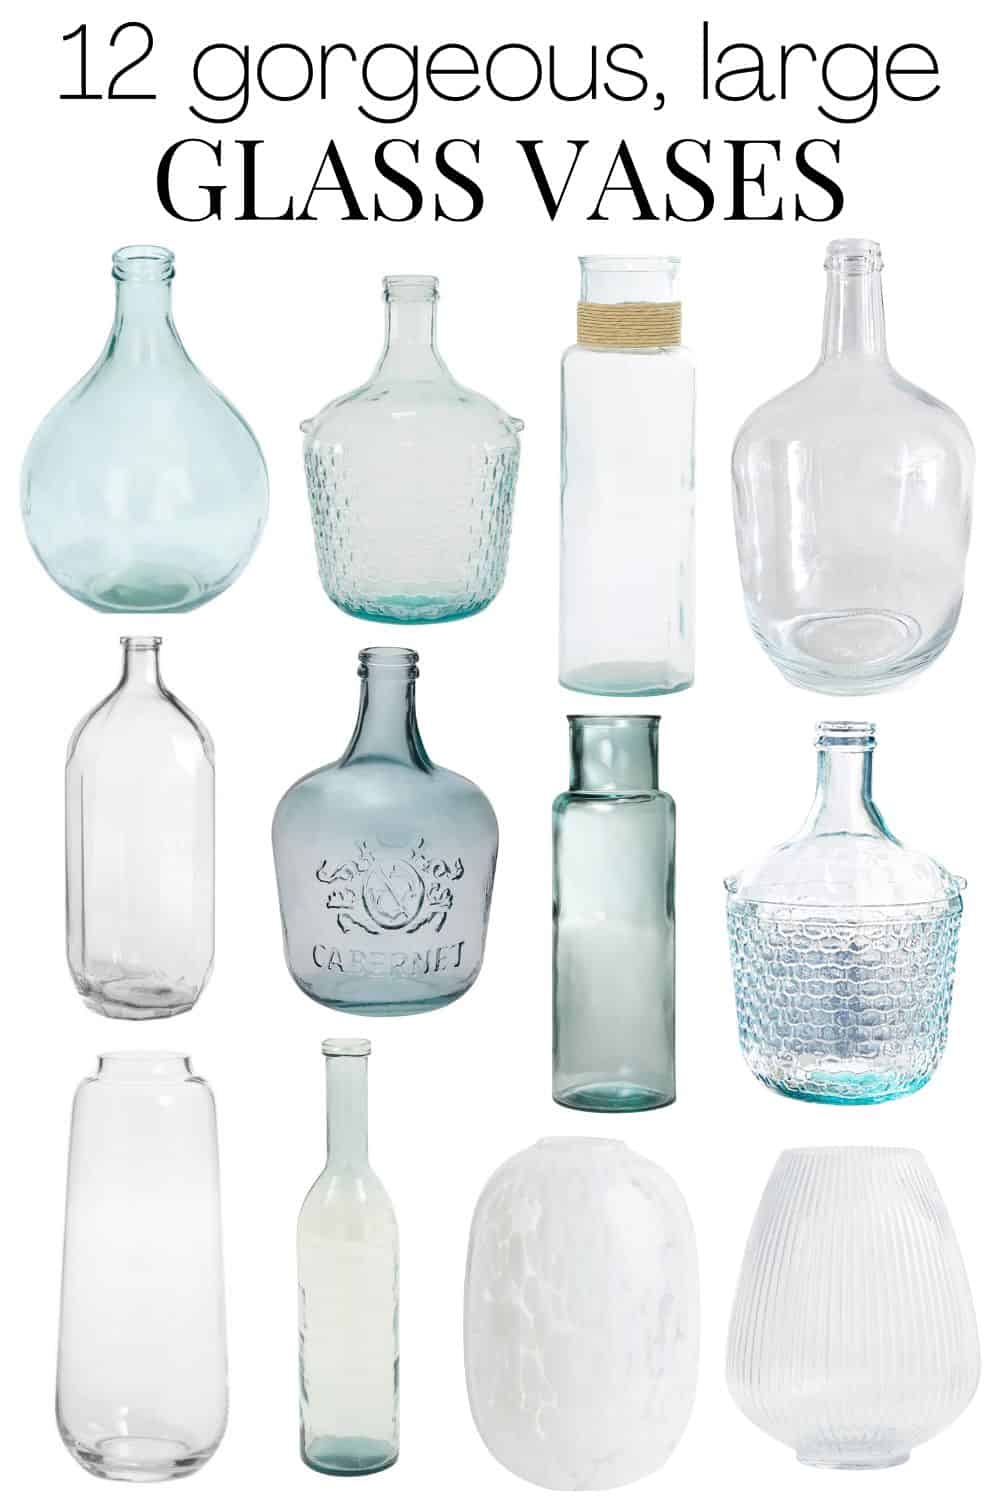 https://www.loveandrenovations.com/wp-content/uploads/2022/06/large-glass-vases.jpg